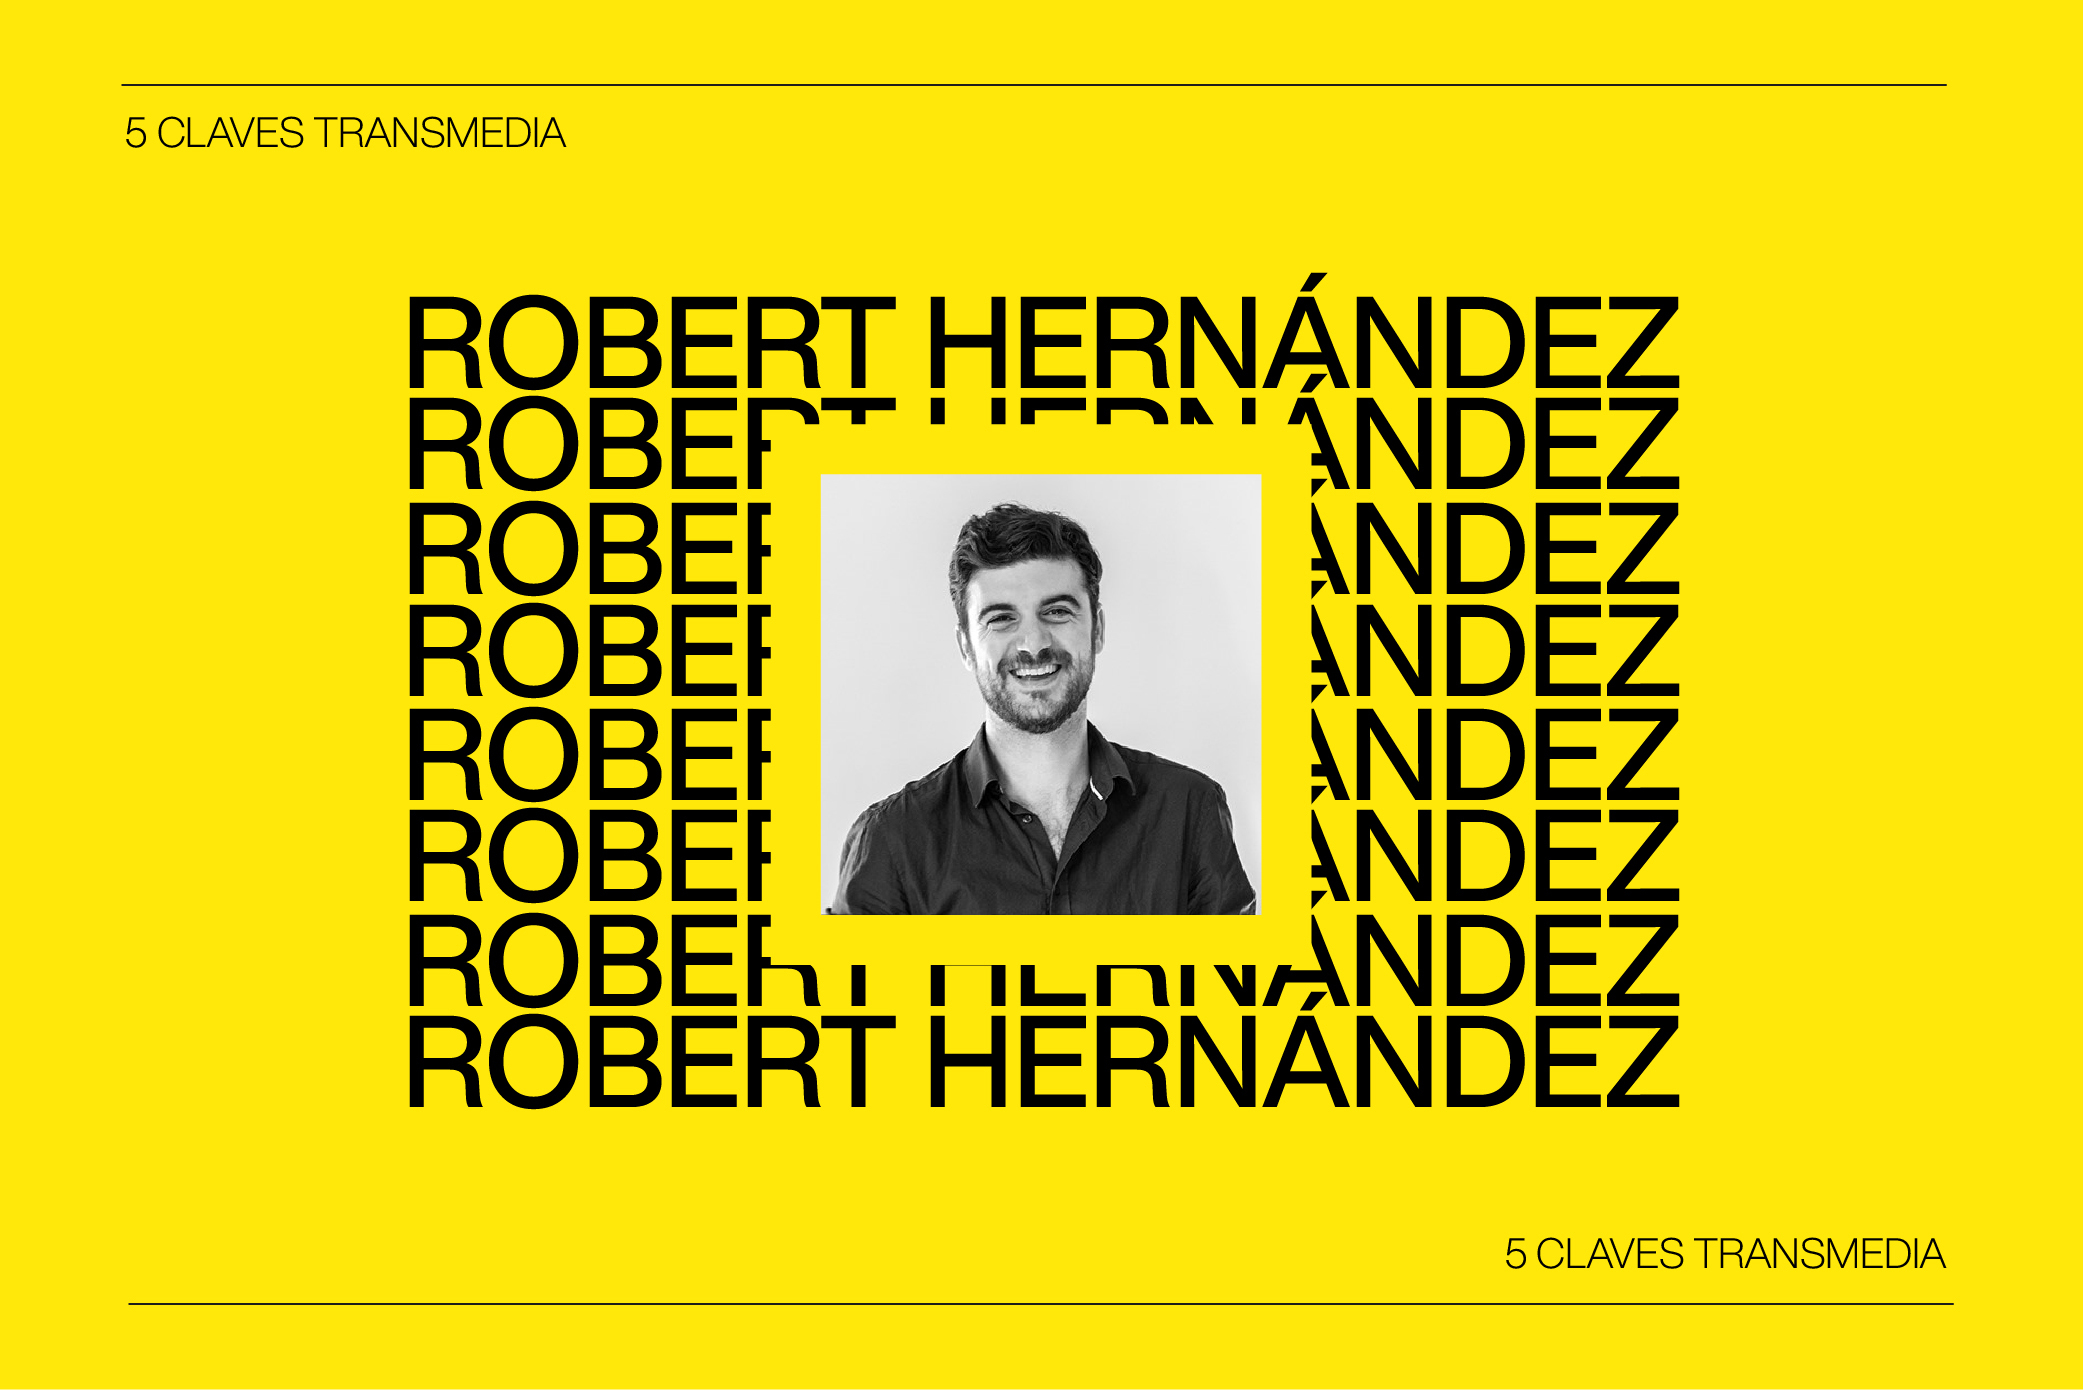 Las 5 Claves del Transmedia con Robert Hernández